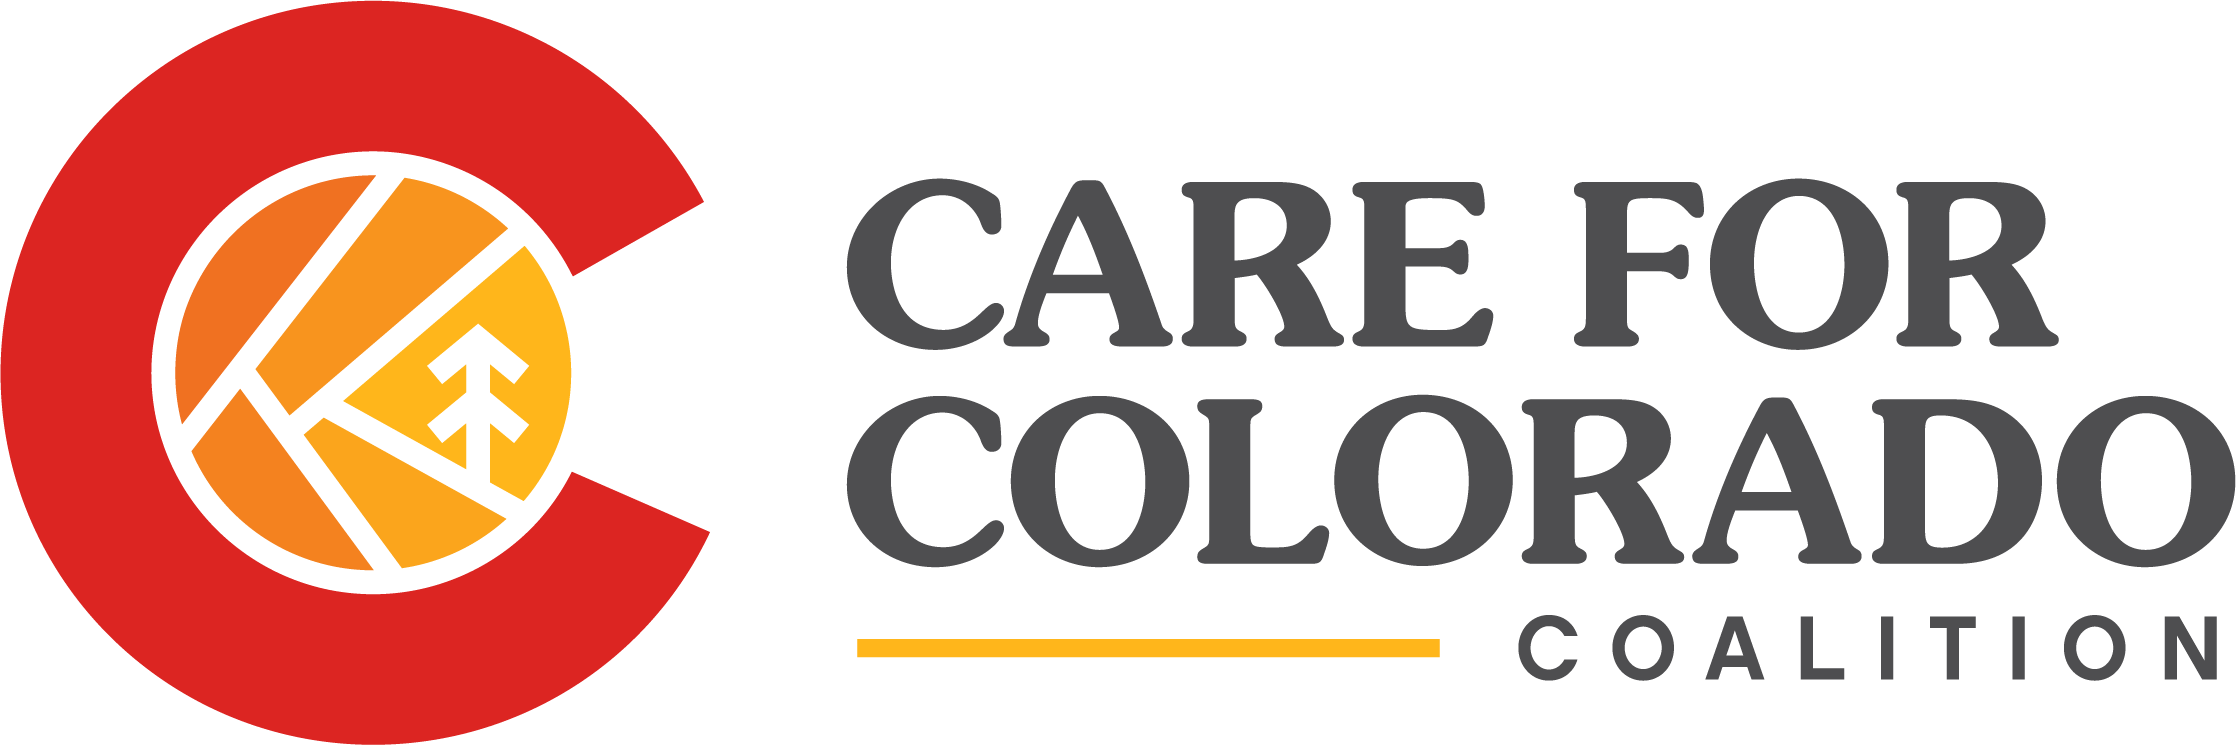 Care for Colorado